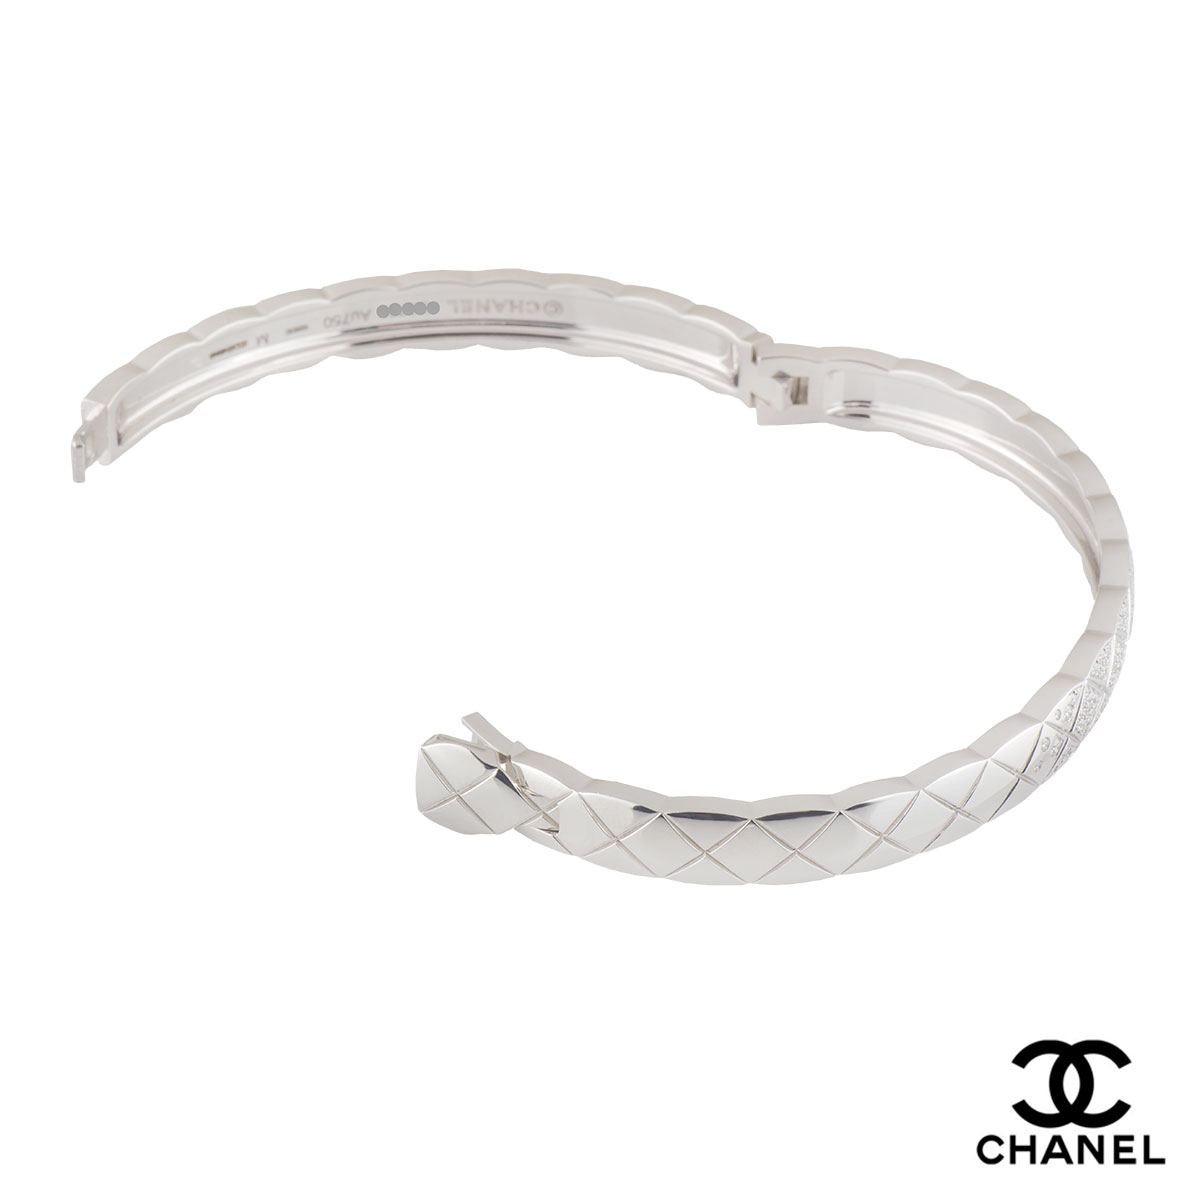 Chanel white gold bracelet Matelassé collection